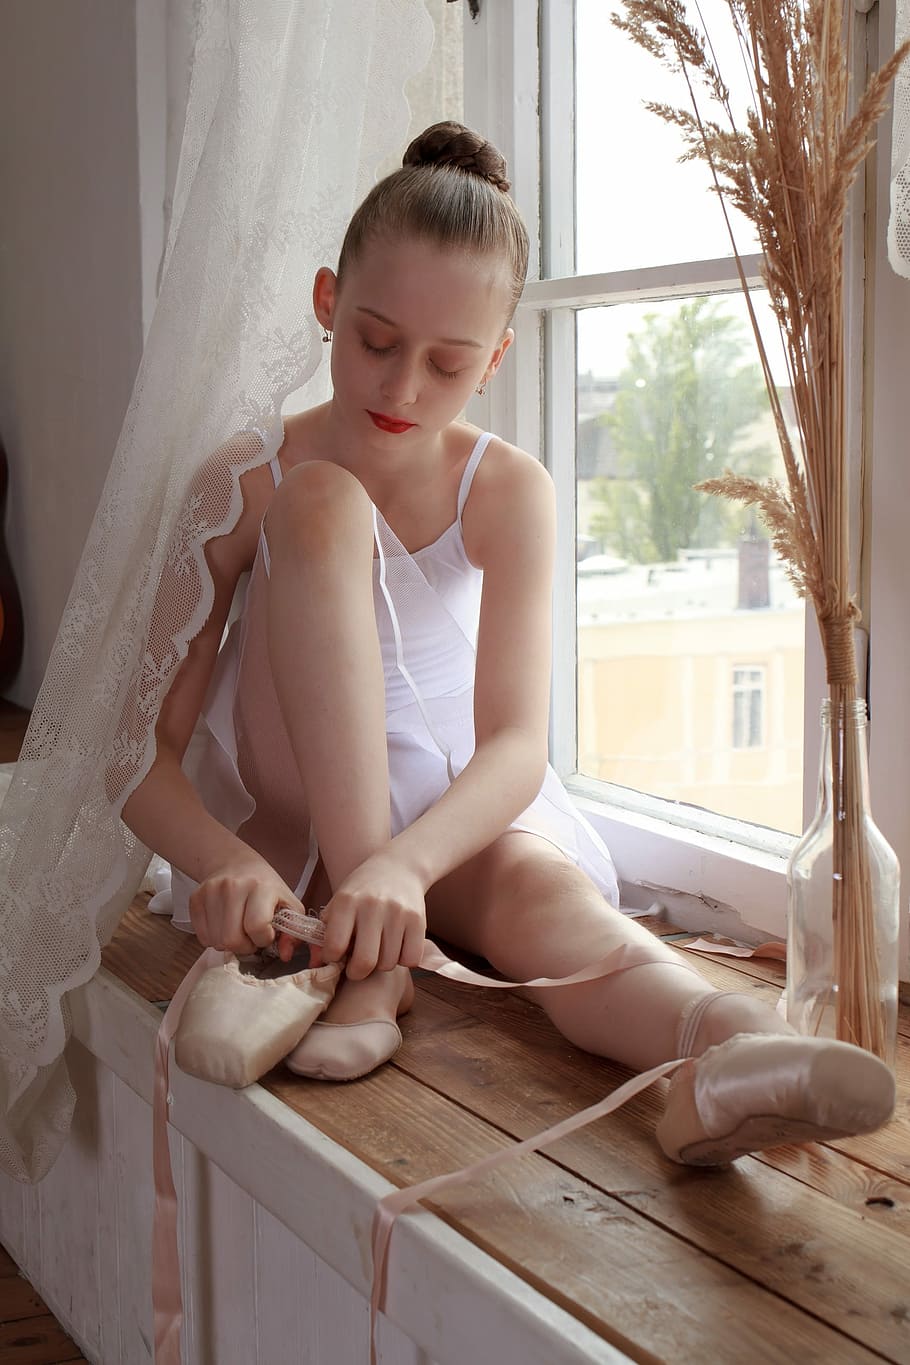 ballerina, shoes, window, ballet, active, balance, exercise, gymnastics, girl, young